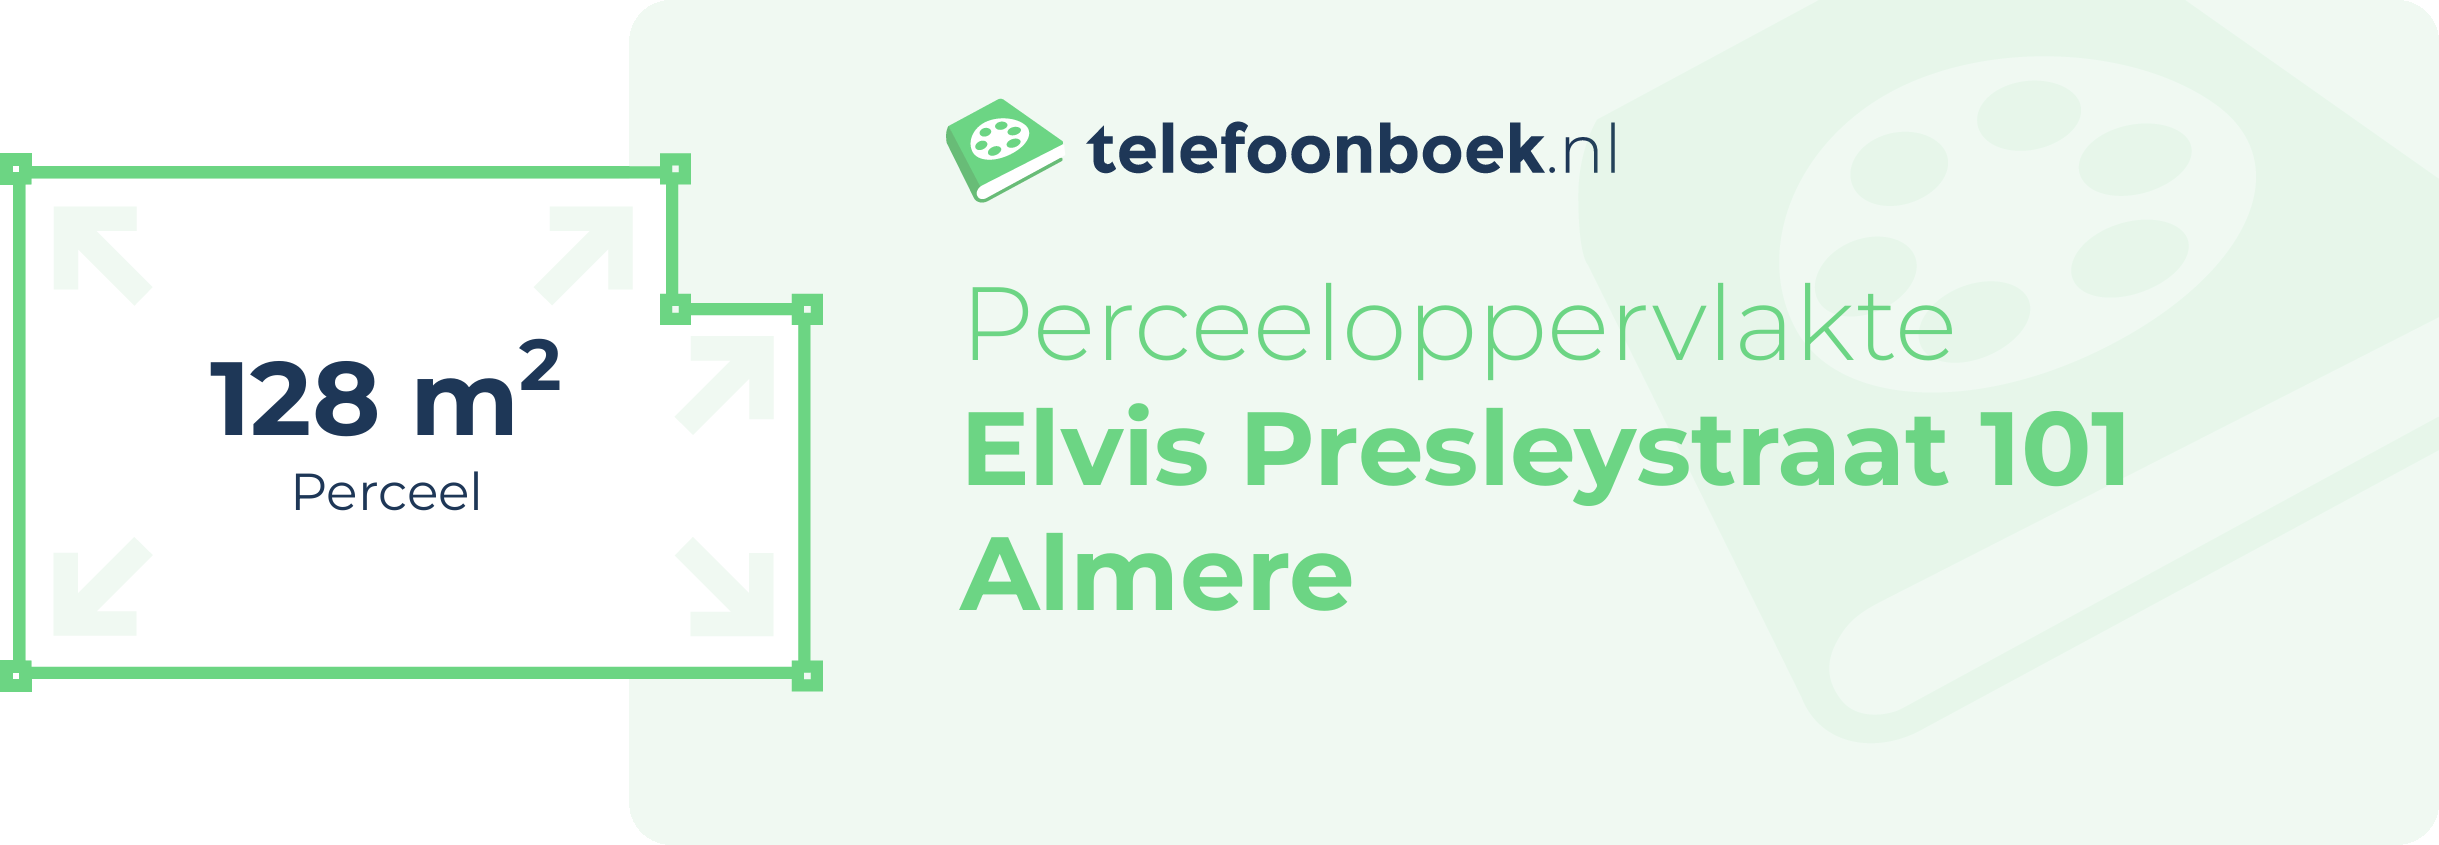 Perceeloppervlakte Elvis Presleystraat 101 Almere